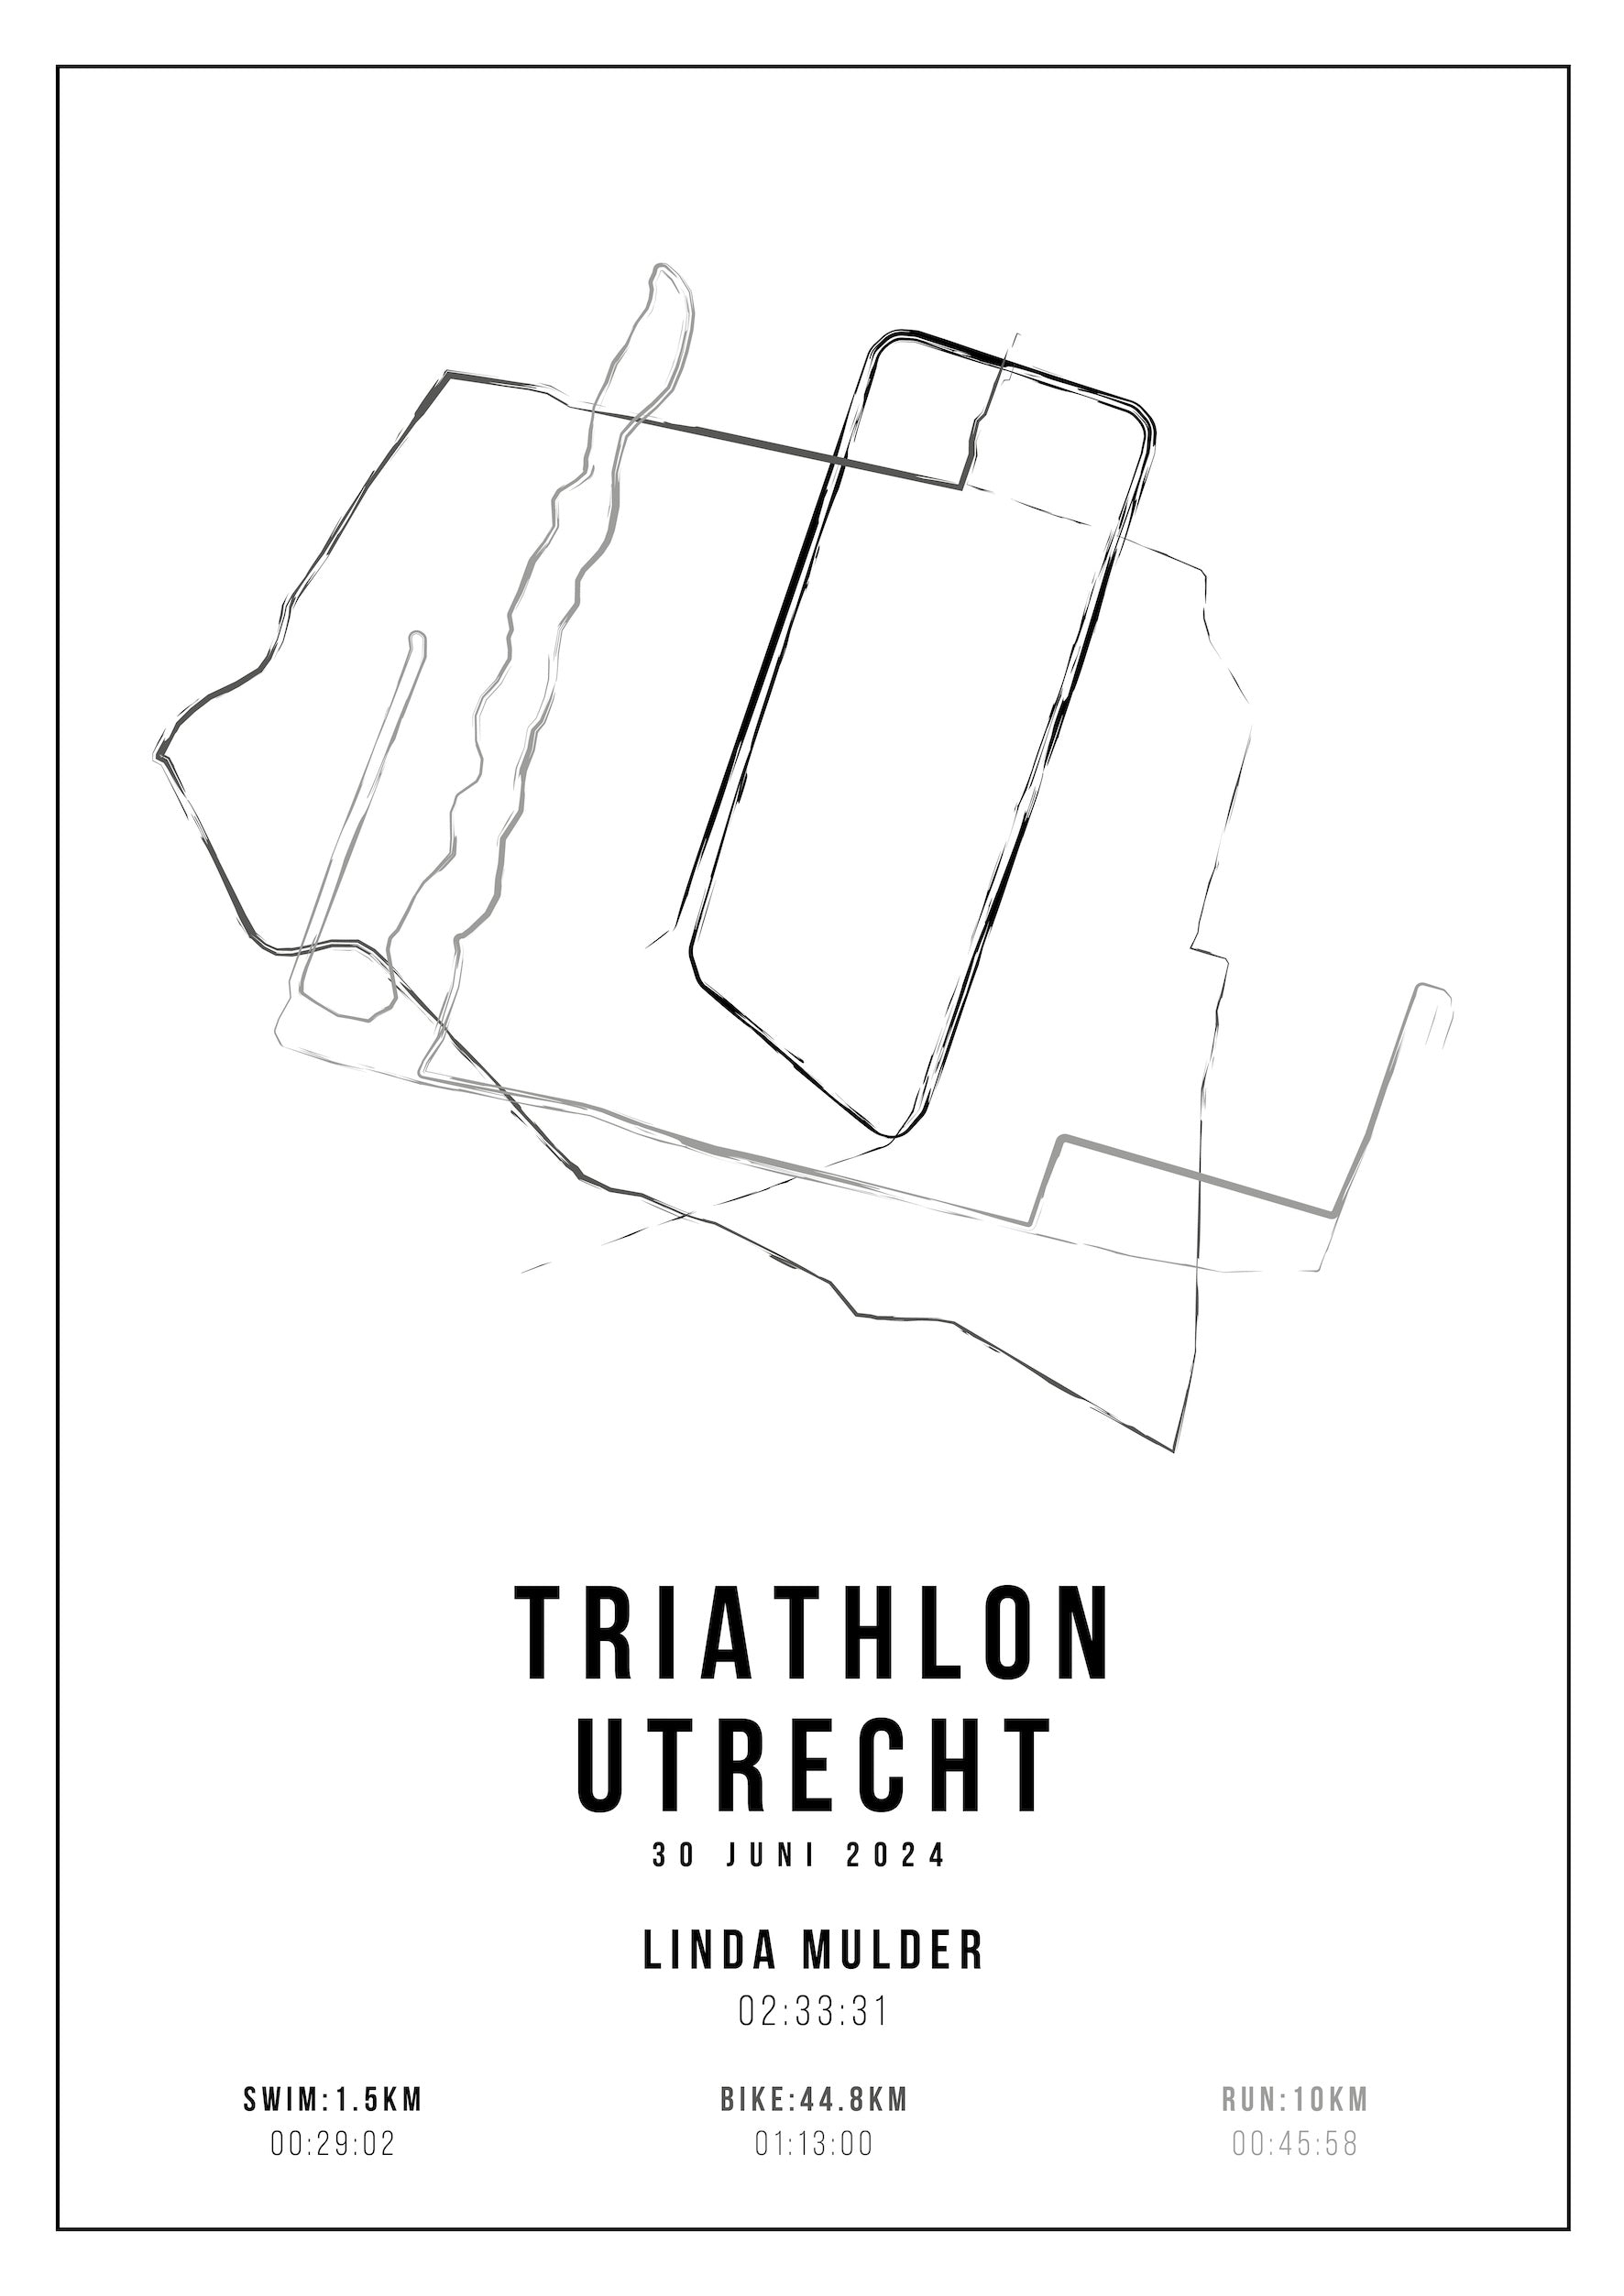 Triathlon Utrecht - Handmade Drawing - Poster